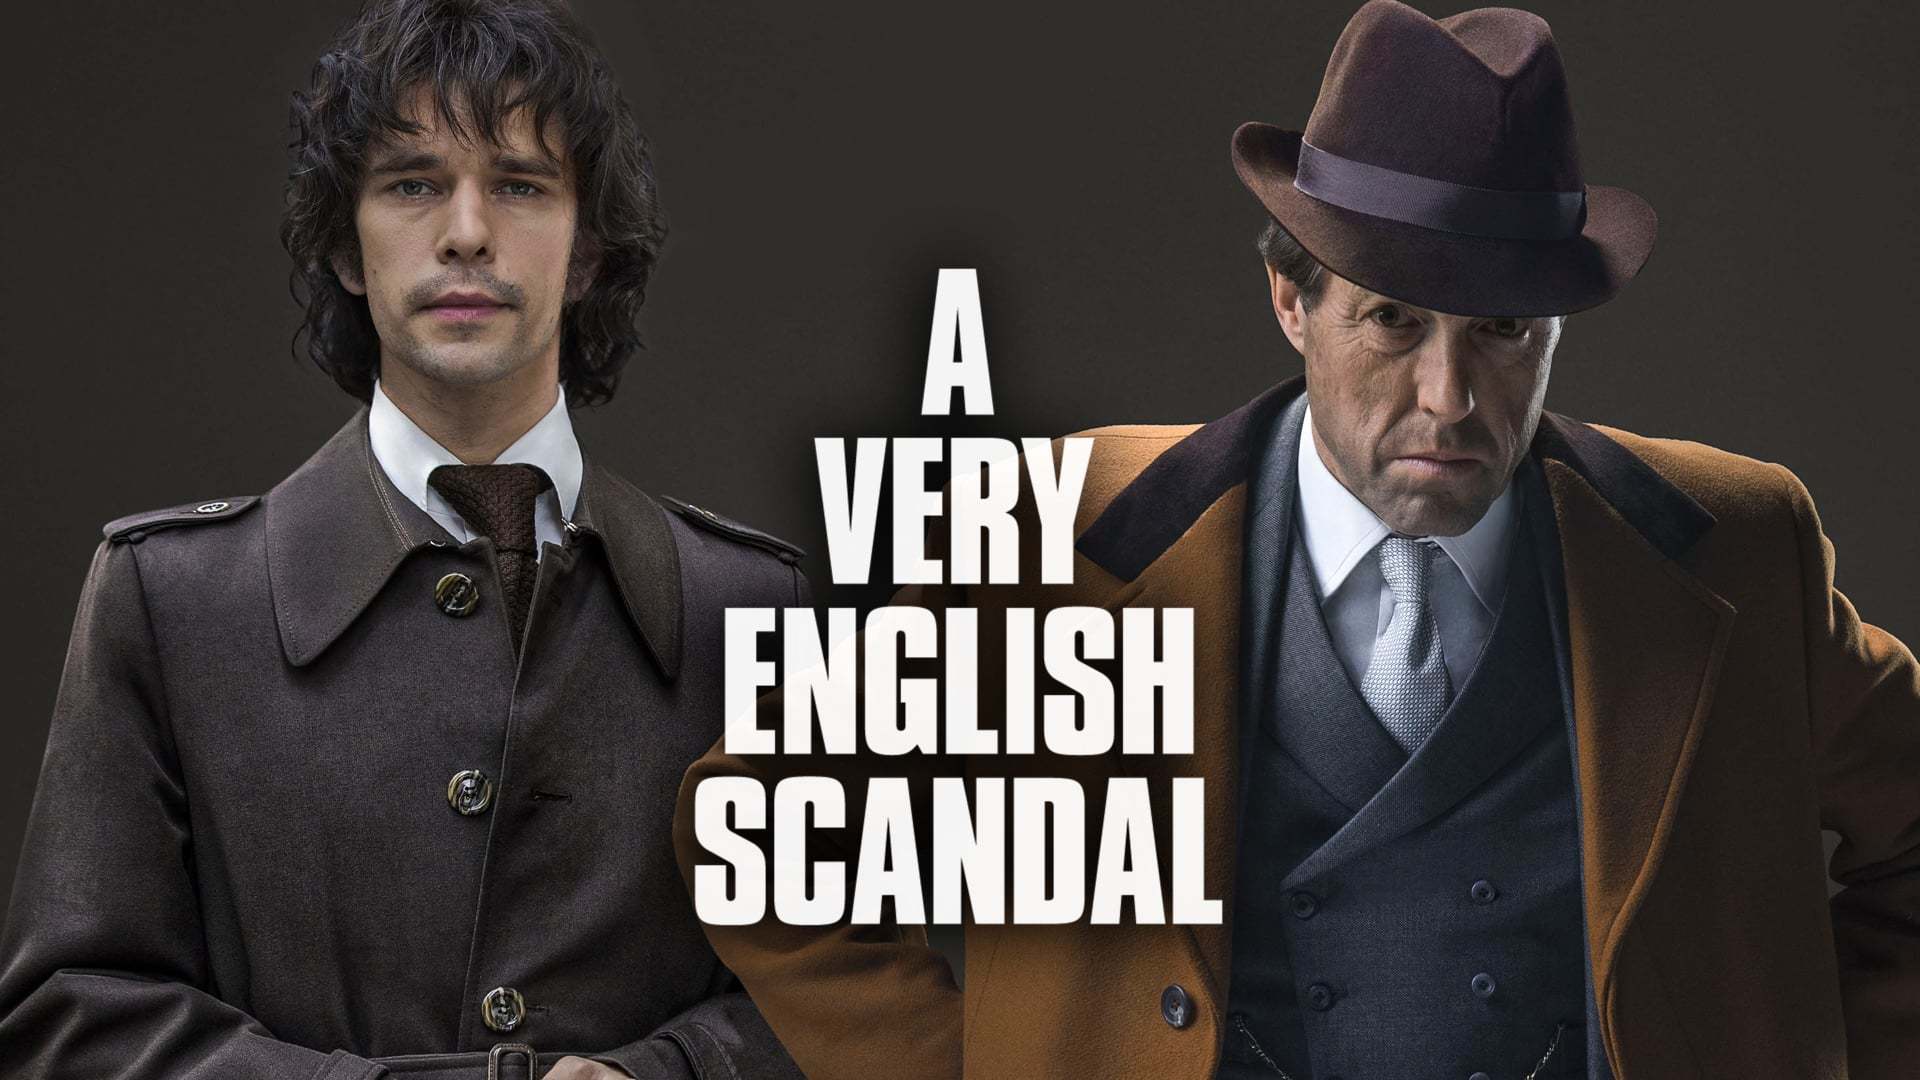 ინგლისური სკანდალი / A Very English Scandal